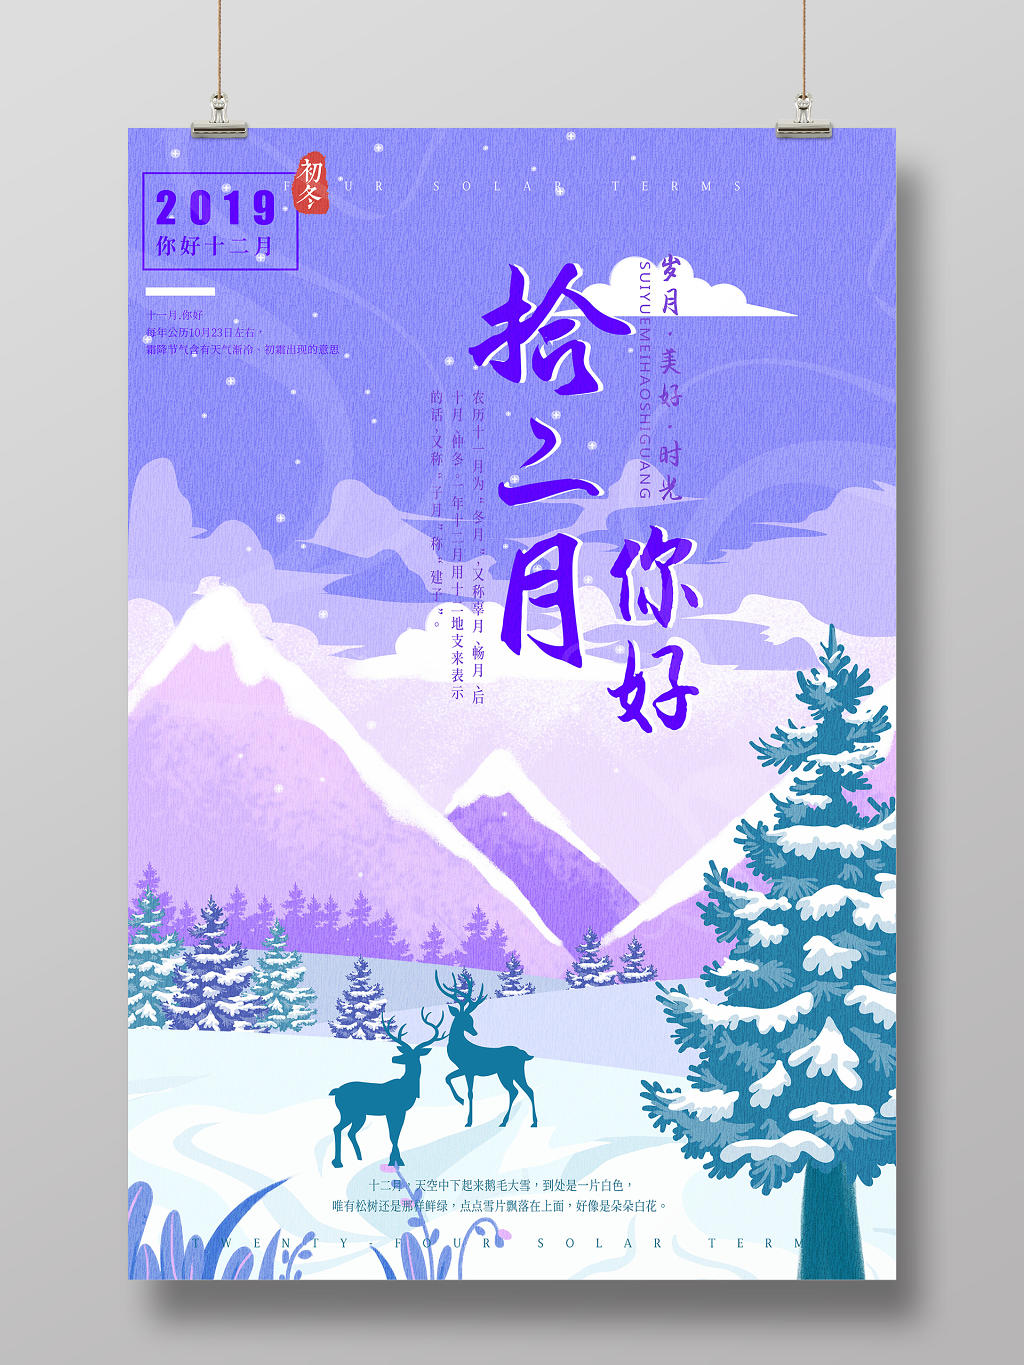 简约唯美紫色手绘12十二月你好冬季宣传海报